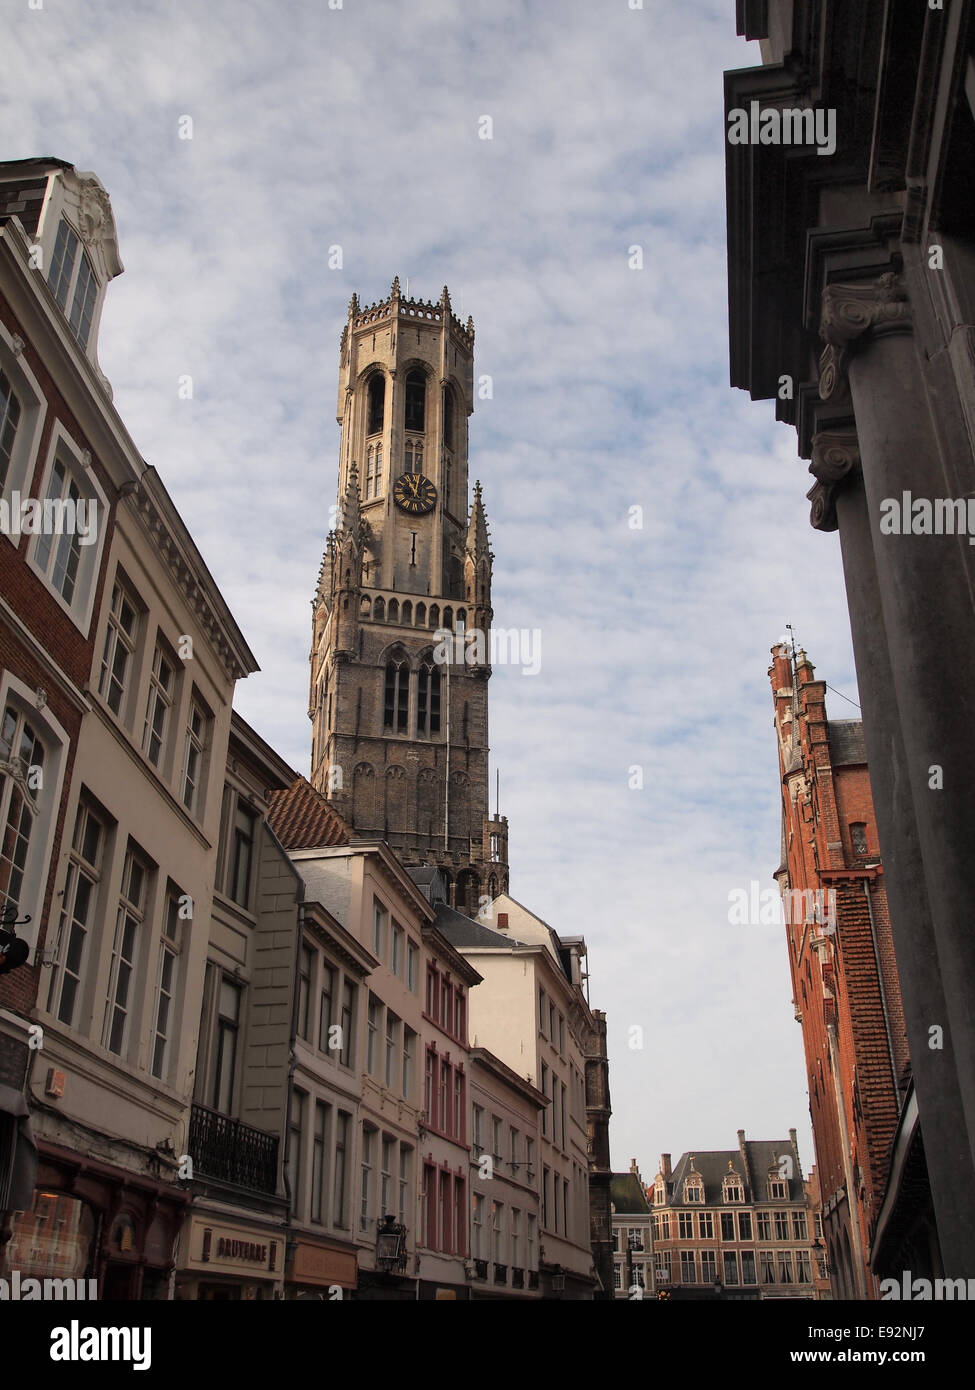 El campanario de Brujas, o Belfort, es un campanario medieval que data de alrededor de 1240, en la histórica ciudad de Brujas en Bélgica Foto de stock